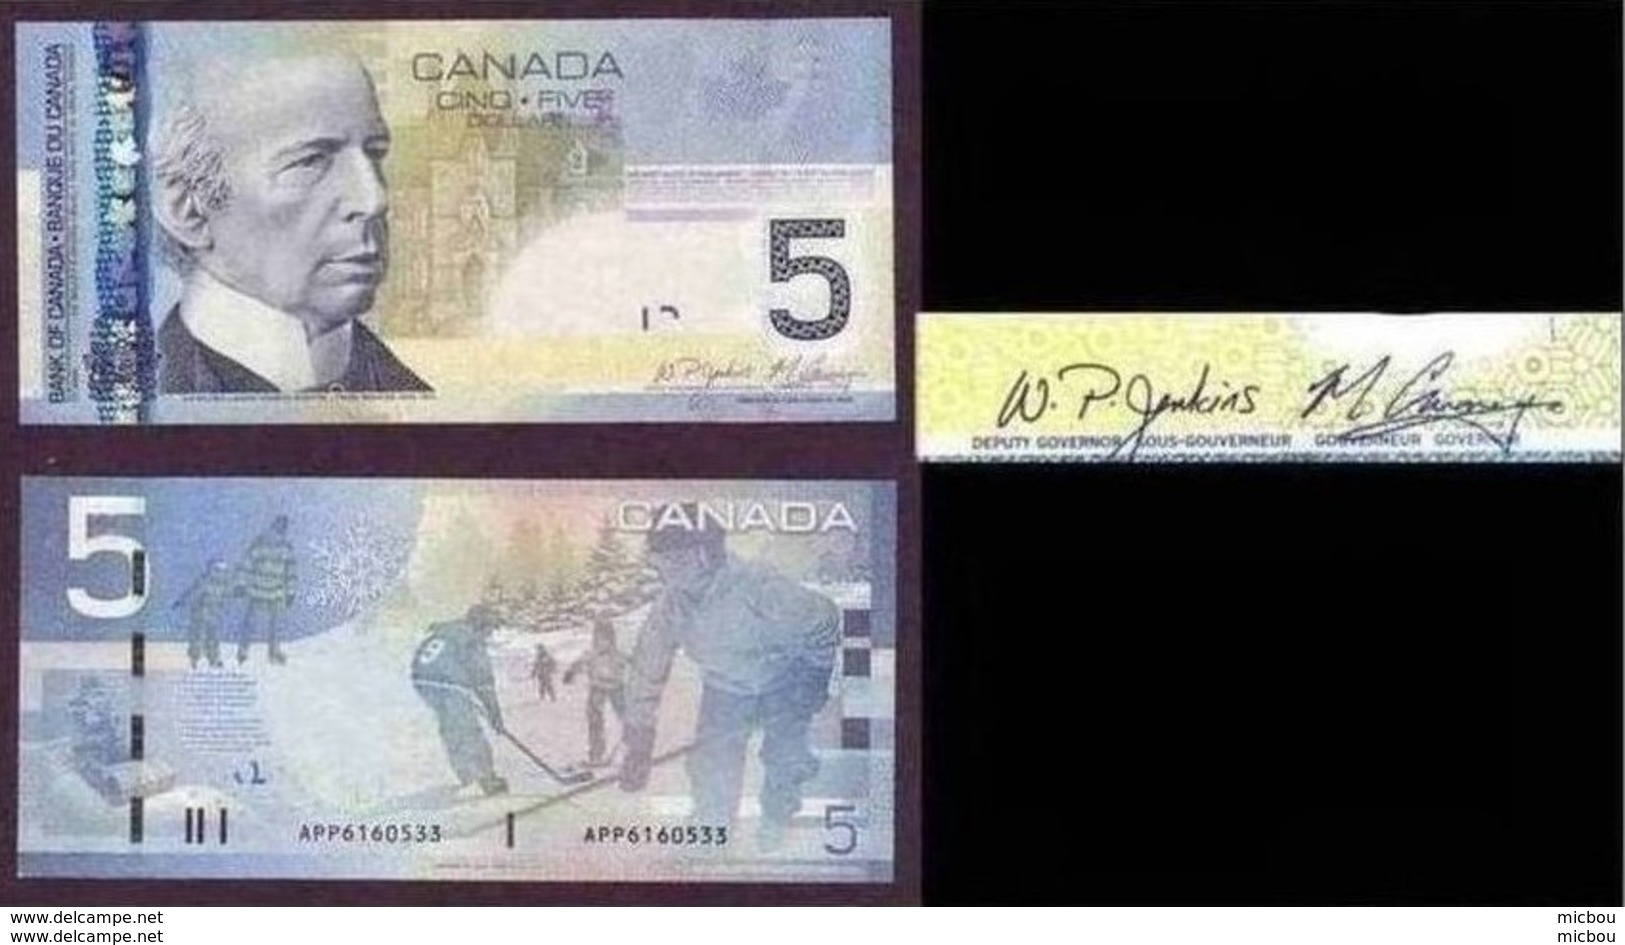 Canada, 2006, Nouveau 5$, Série APP,  Avec La Bande Métallique à Gauche, Hockey, Patin, Patinage, Enfants, Children - Canada